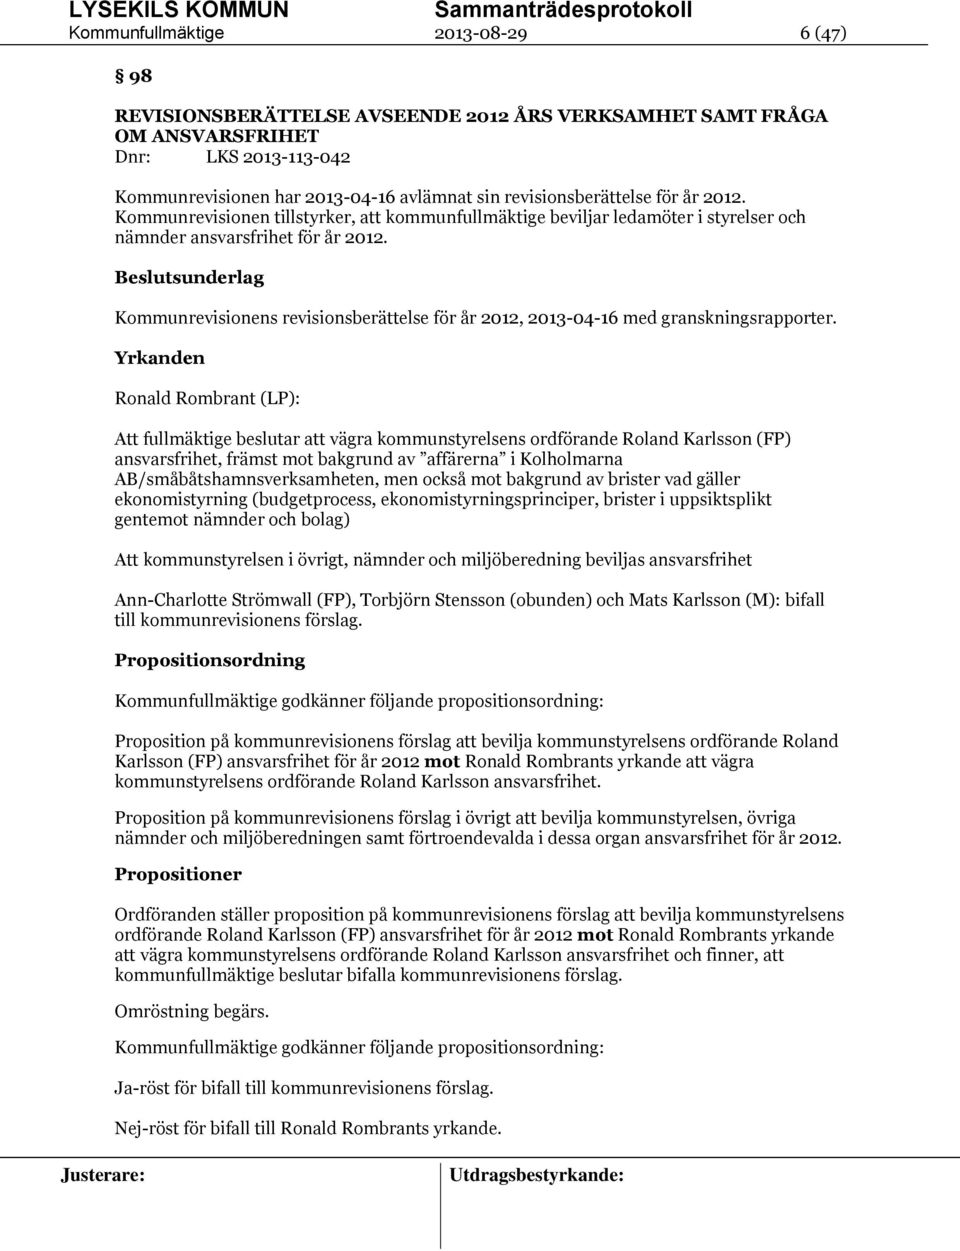 Beslutsunderlag Kommunrevisionens revisionsberättelse för år 2012, 2013-04-16 med granskningsrapporter.